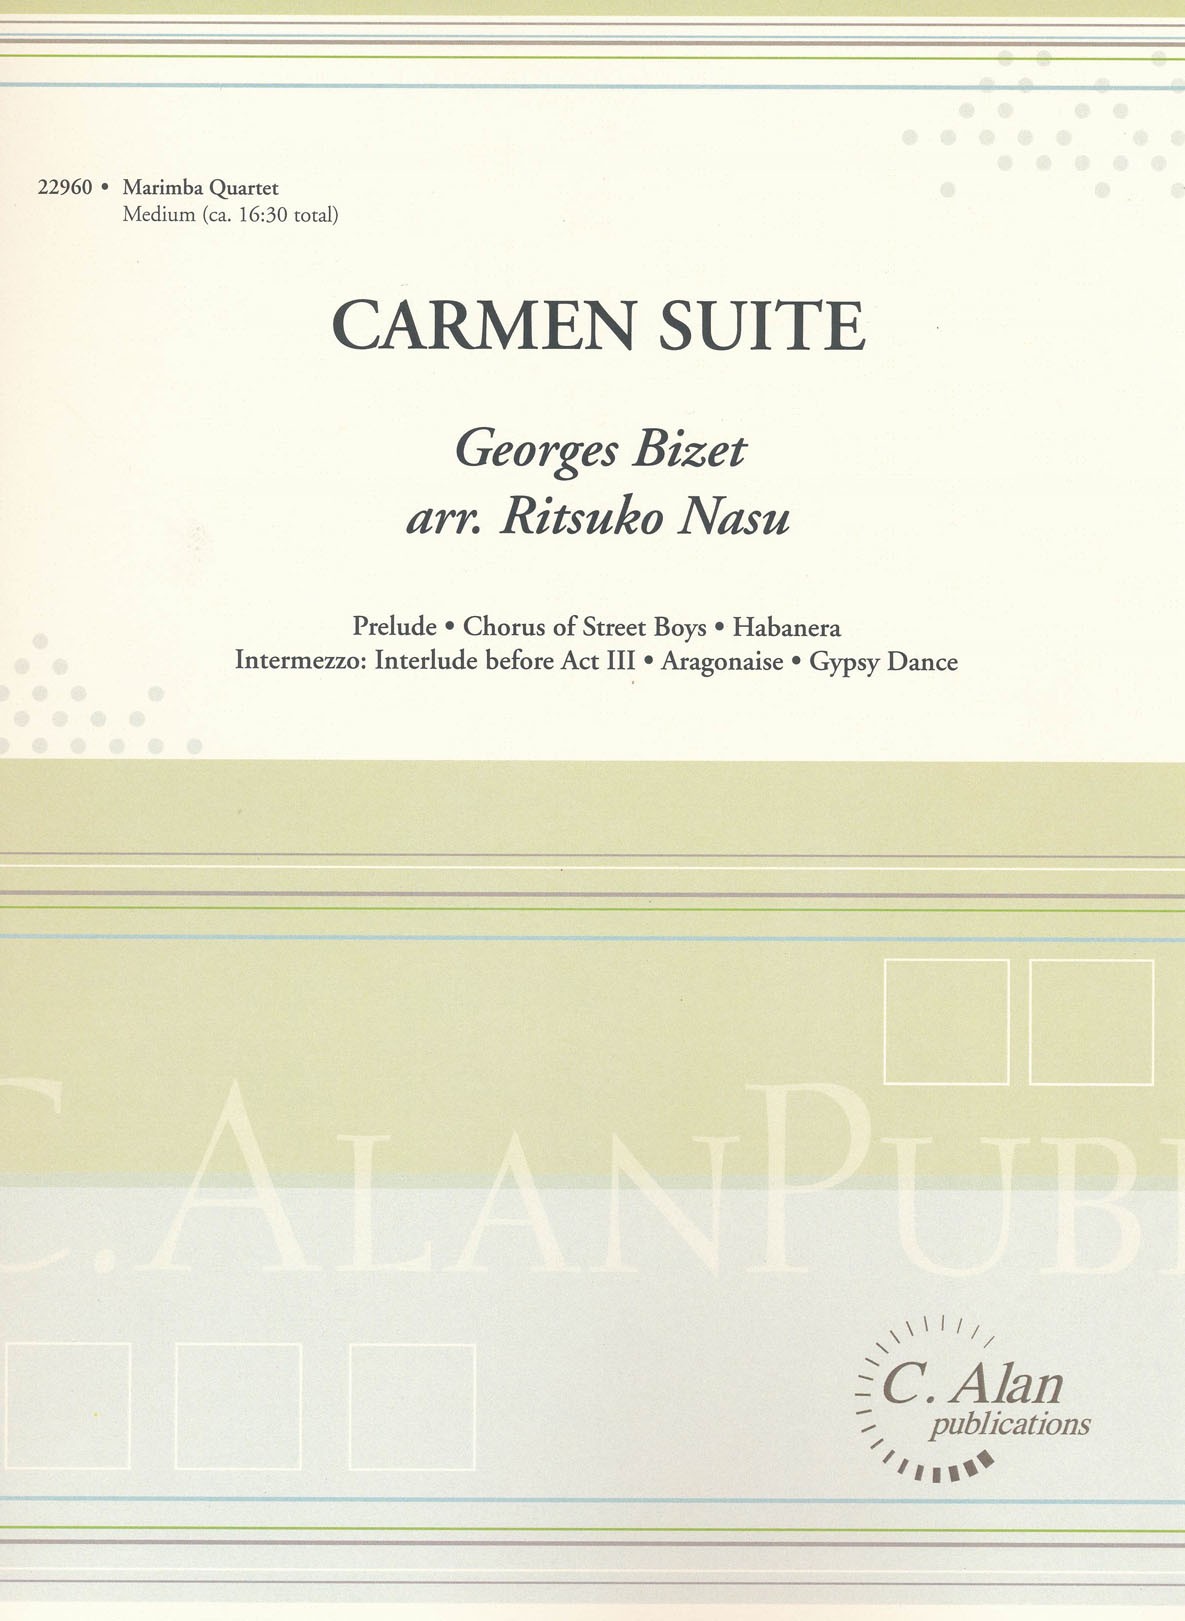 Carmen Suite by Bizet arr. Ritsuko Nasu